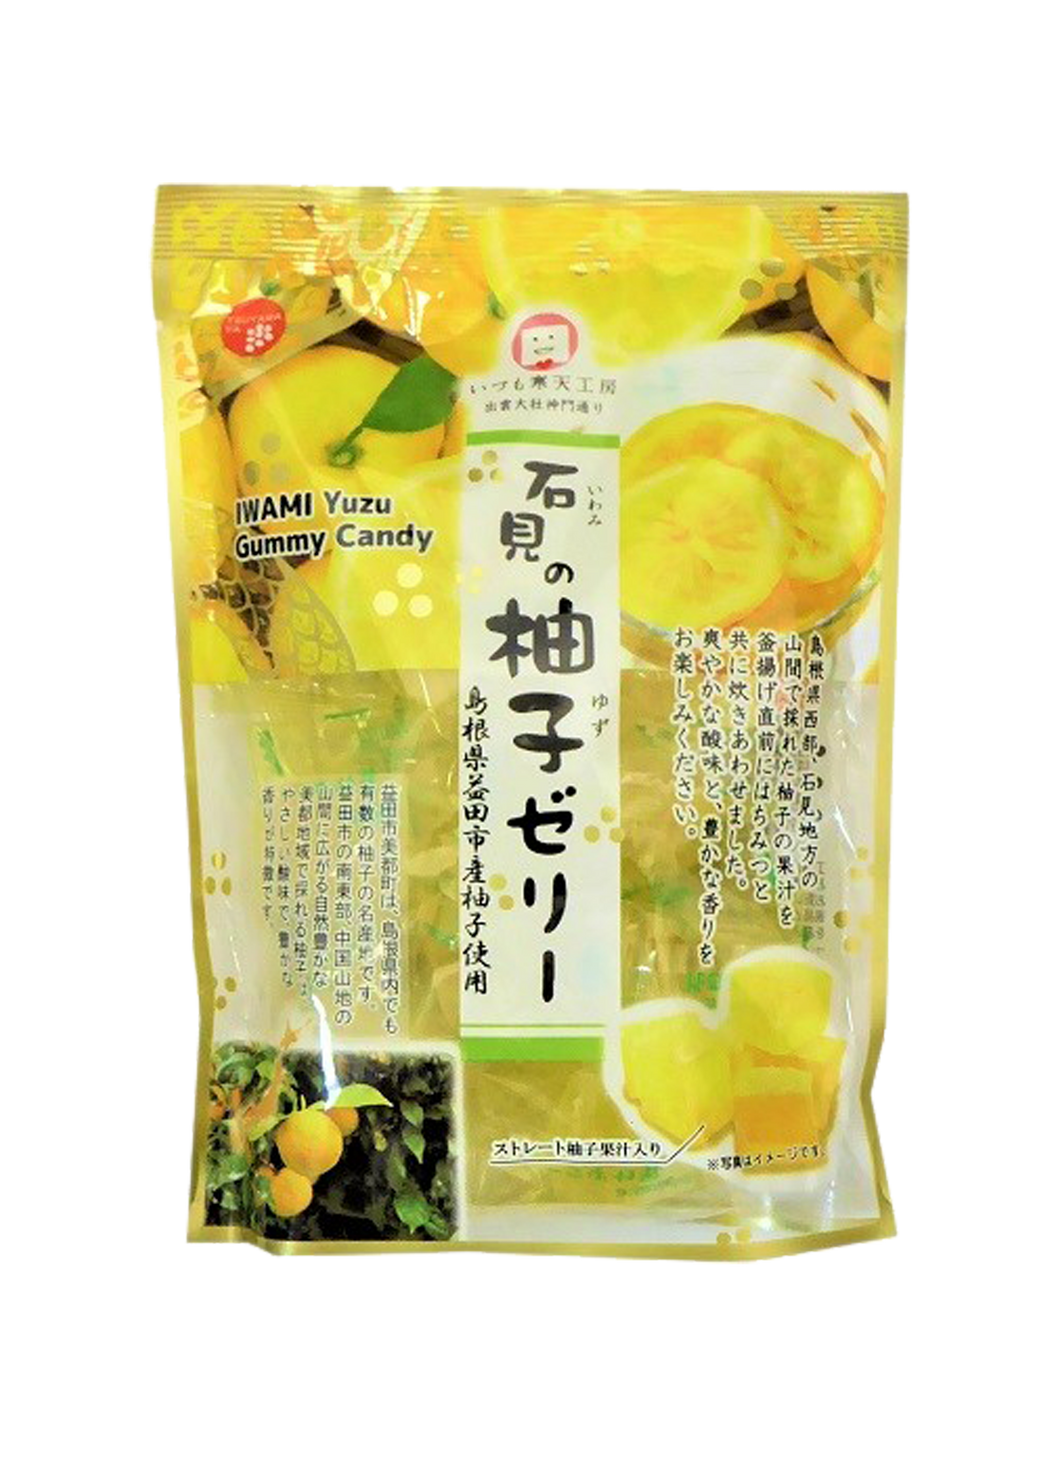 IWAMI Yuzu Gummy Candy 120g